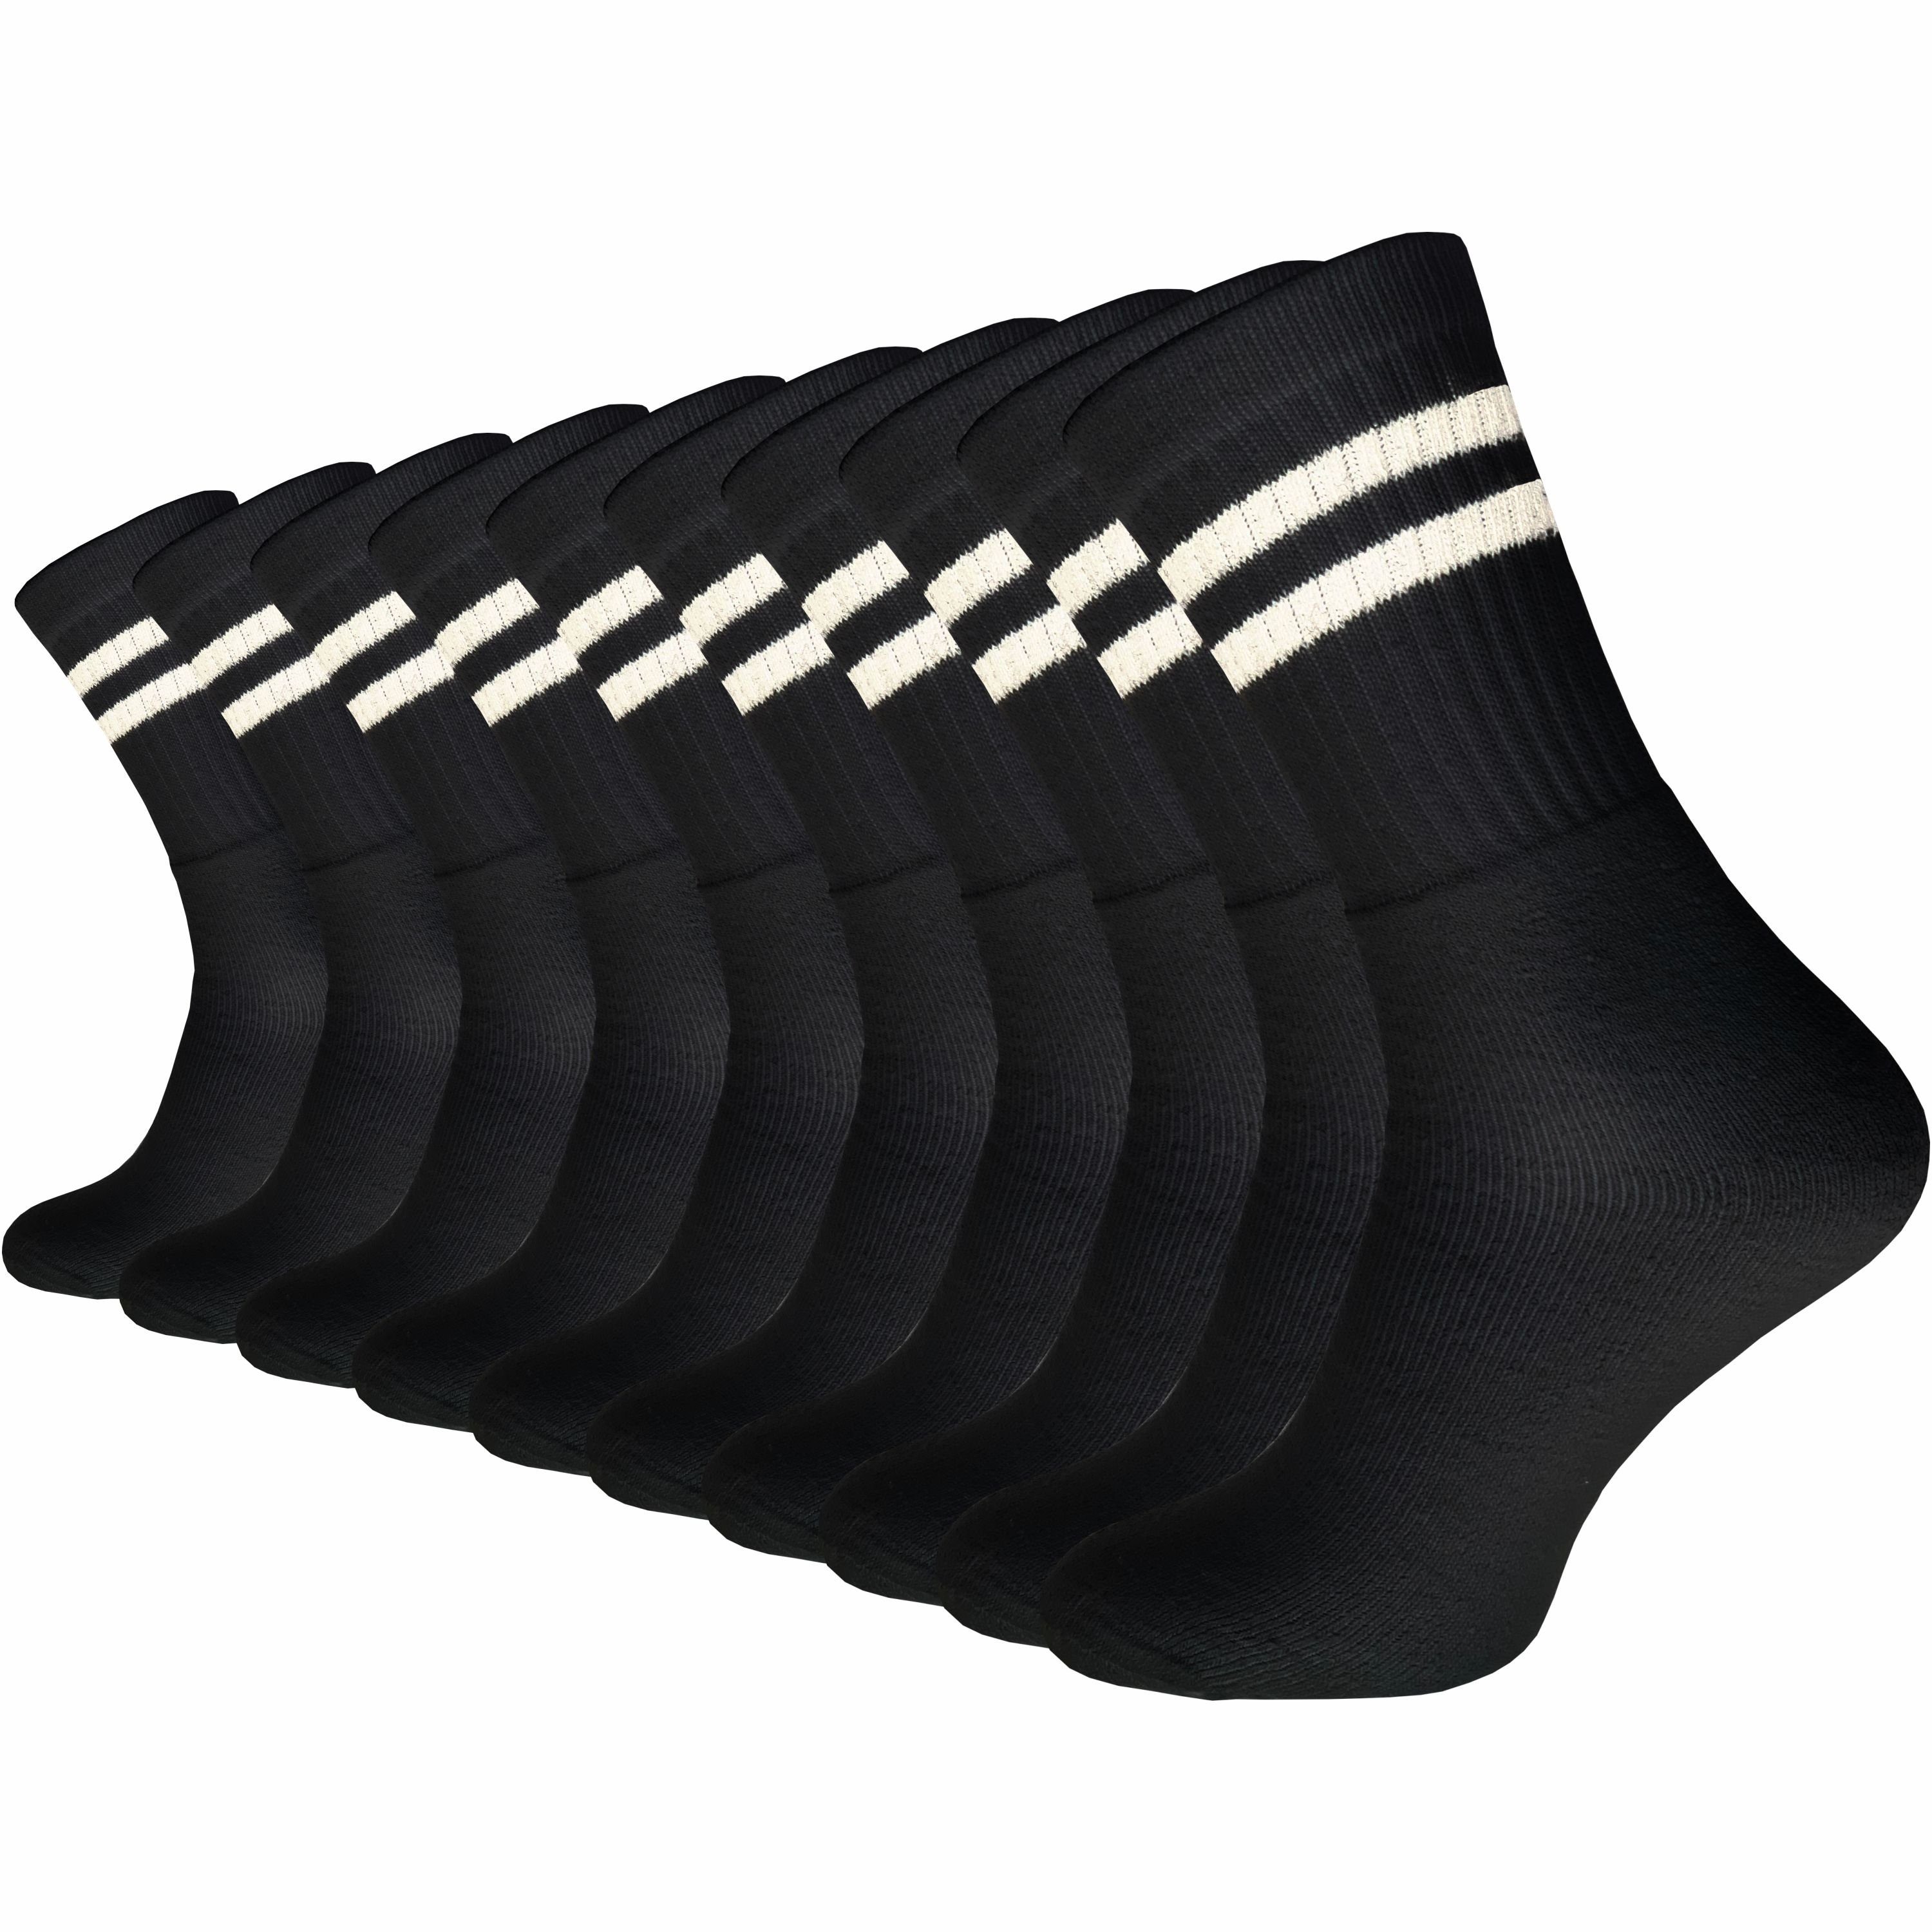 GAWILO Tennissocken für Damen & Herren in schwarz, weiß & grau - Sportsocken aus Baumwolle (10 Paar) Extra langlebig dank verstärktem Frotteefuß - u.a. in 39-42 und 43-46 retro schwarz